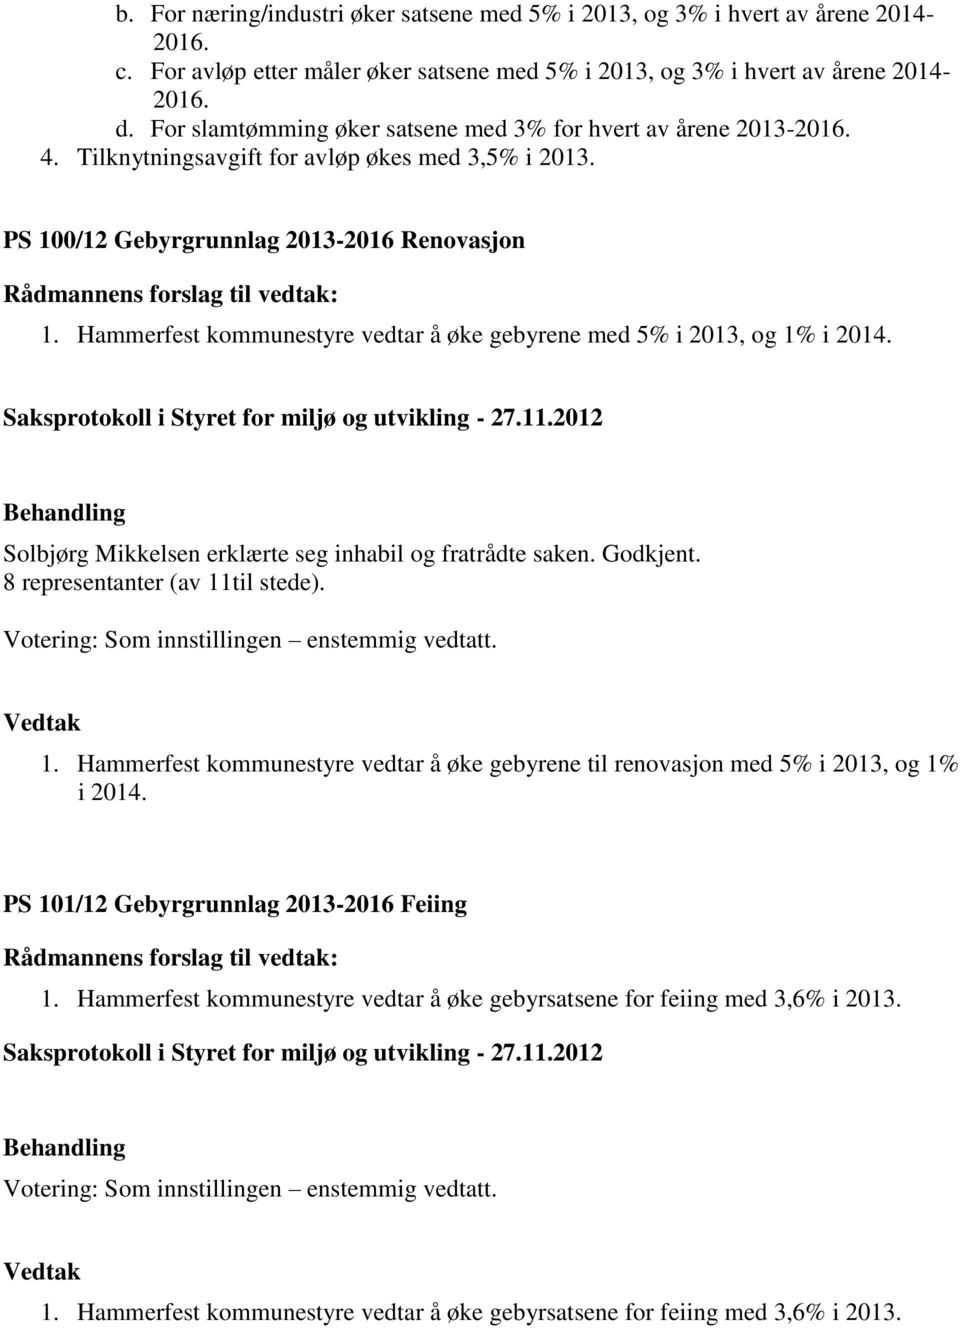 Hammerfest kommunestyre vedtar å øke gebyrene med 5% i 2013, og 1% i 2014. Solbjørg Mikkelsen erklærte seg inhabil og fratrådte saken. Godkjent. 8 representanter (av 11til stede). 1. Hammerfest kommunestyre vedtar å øke gebyrene til renovasjon med 5% i 2013, og 1% i 2014.